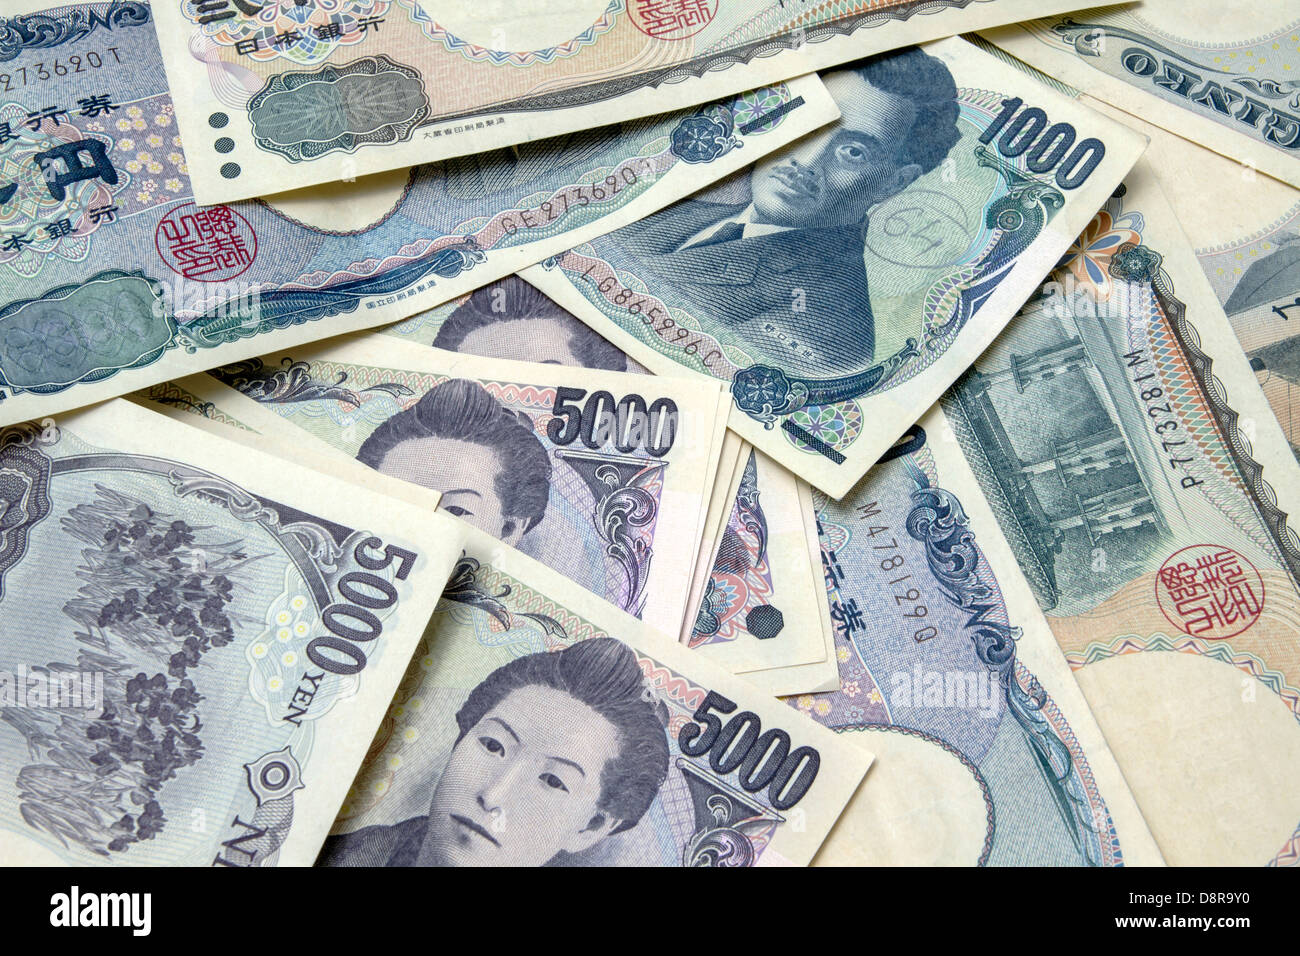 Background of Japanese yen notes Stock Photo